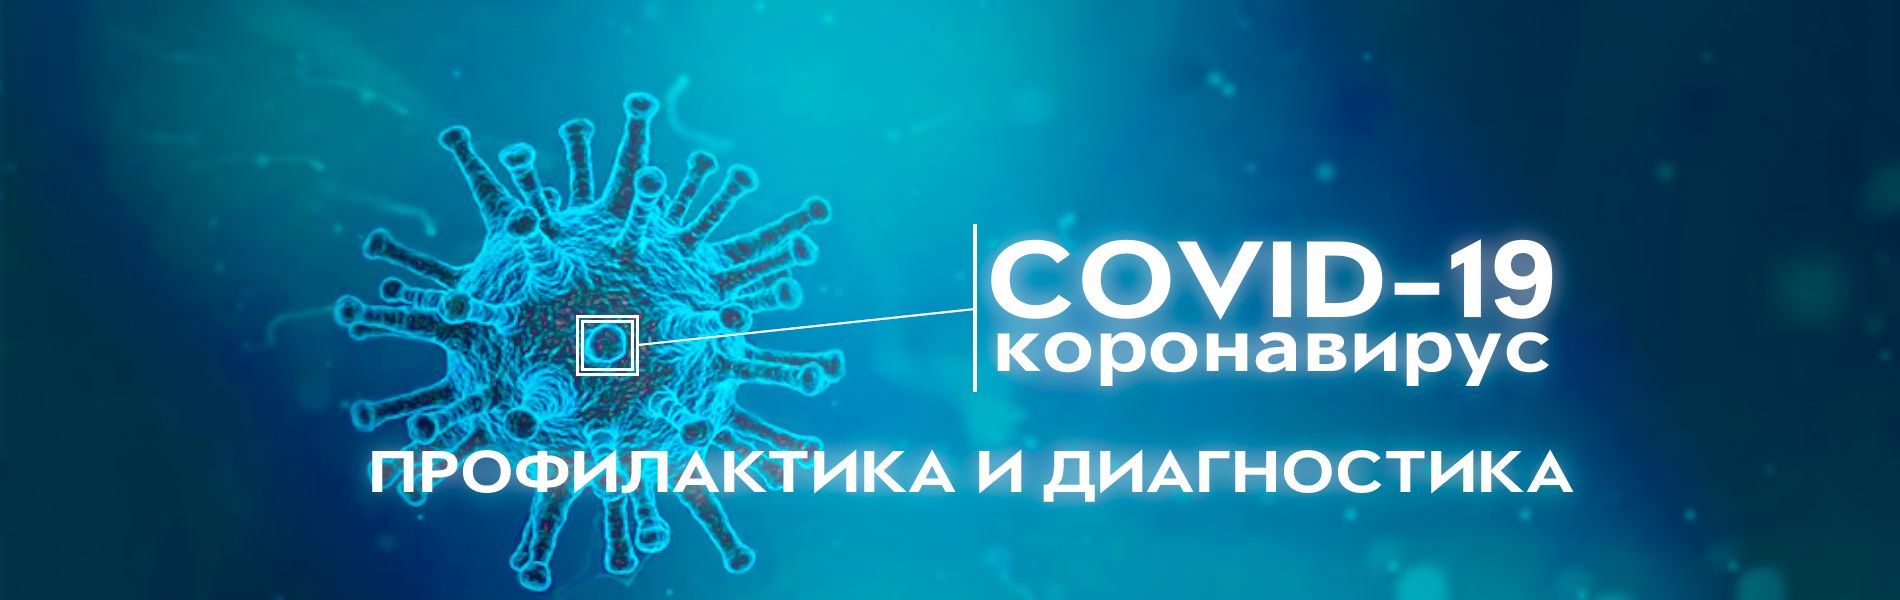 Профилактика и диагностика коронавируса